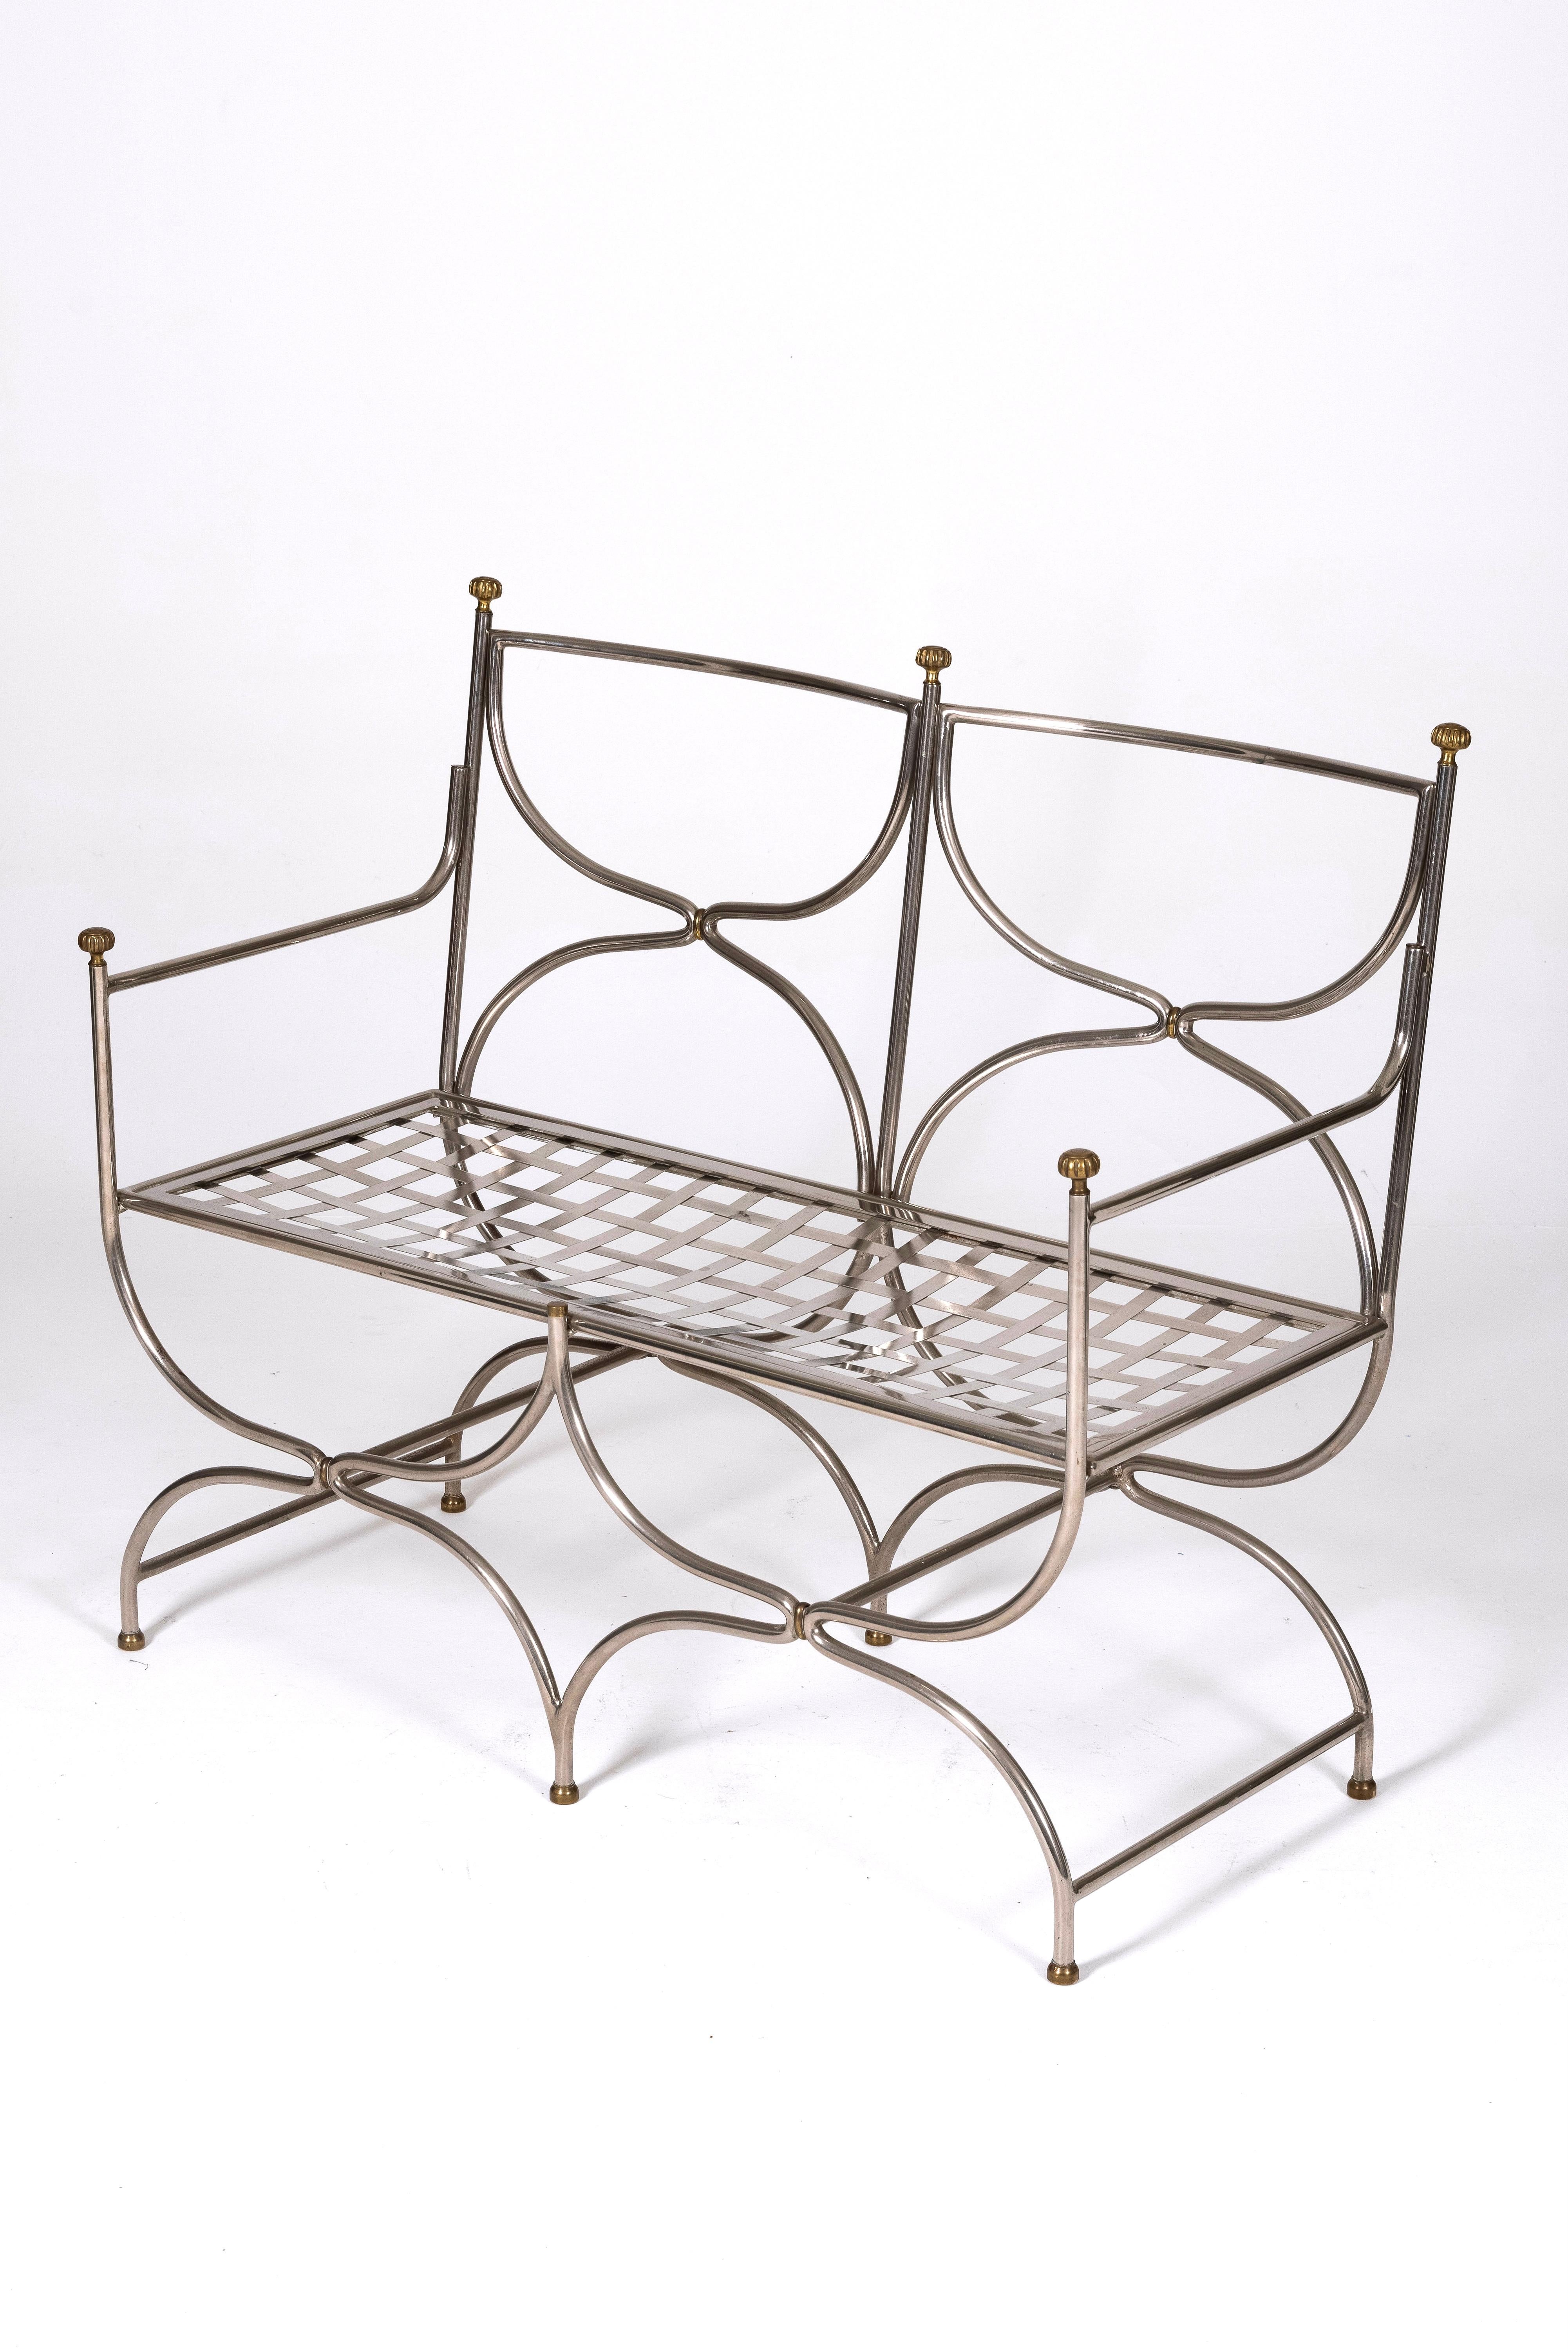 Curule Savonarola-Bank aus Stahl und Messing vom Designer und Verleger Maison Jansen, 1960er Jahre. 2-sitzige Bank mit einer Sitzfläche aus kariertem Stahl und dekorativen Messingelementen. Sehr guter Zustand.
LP1460